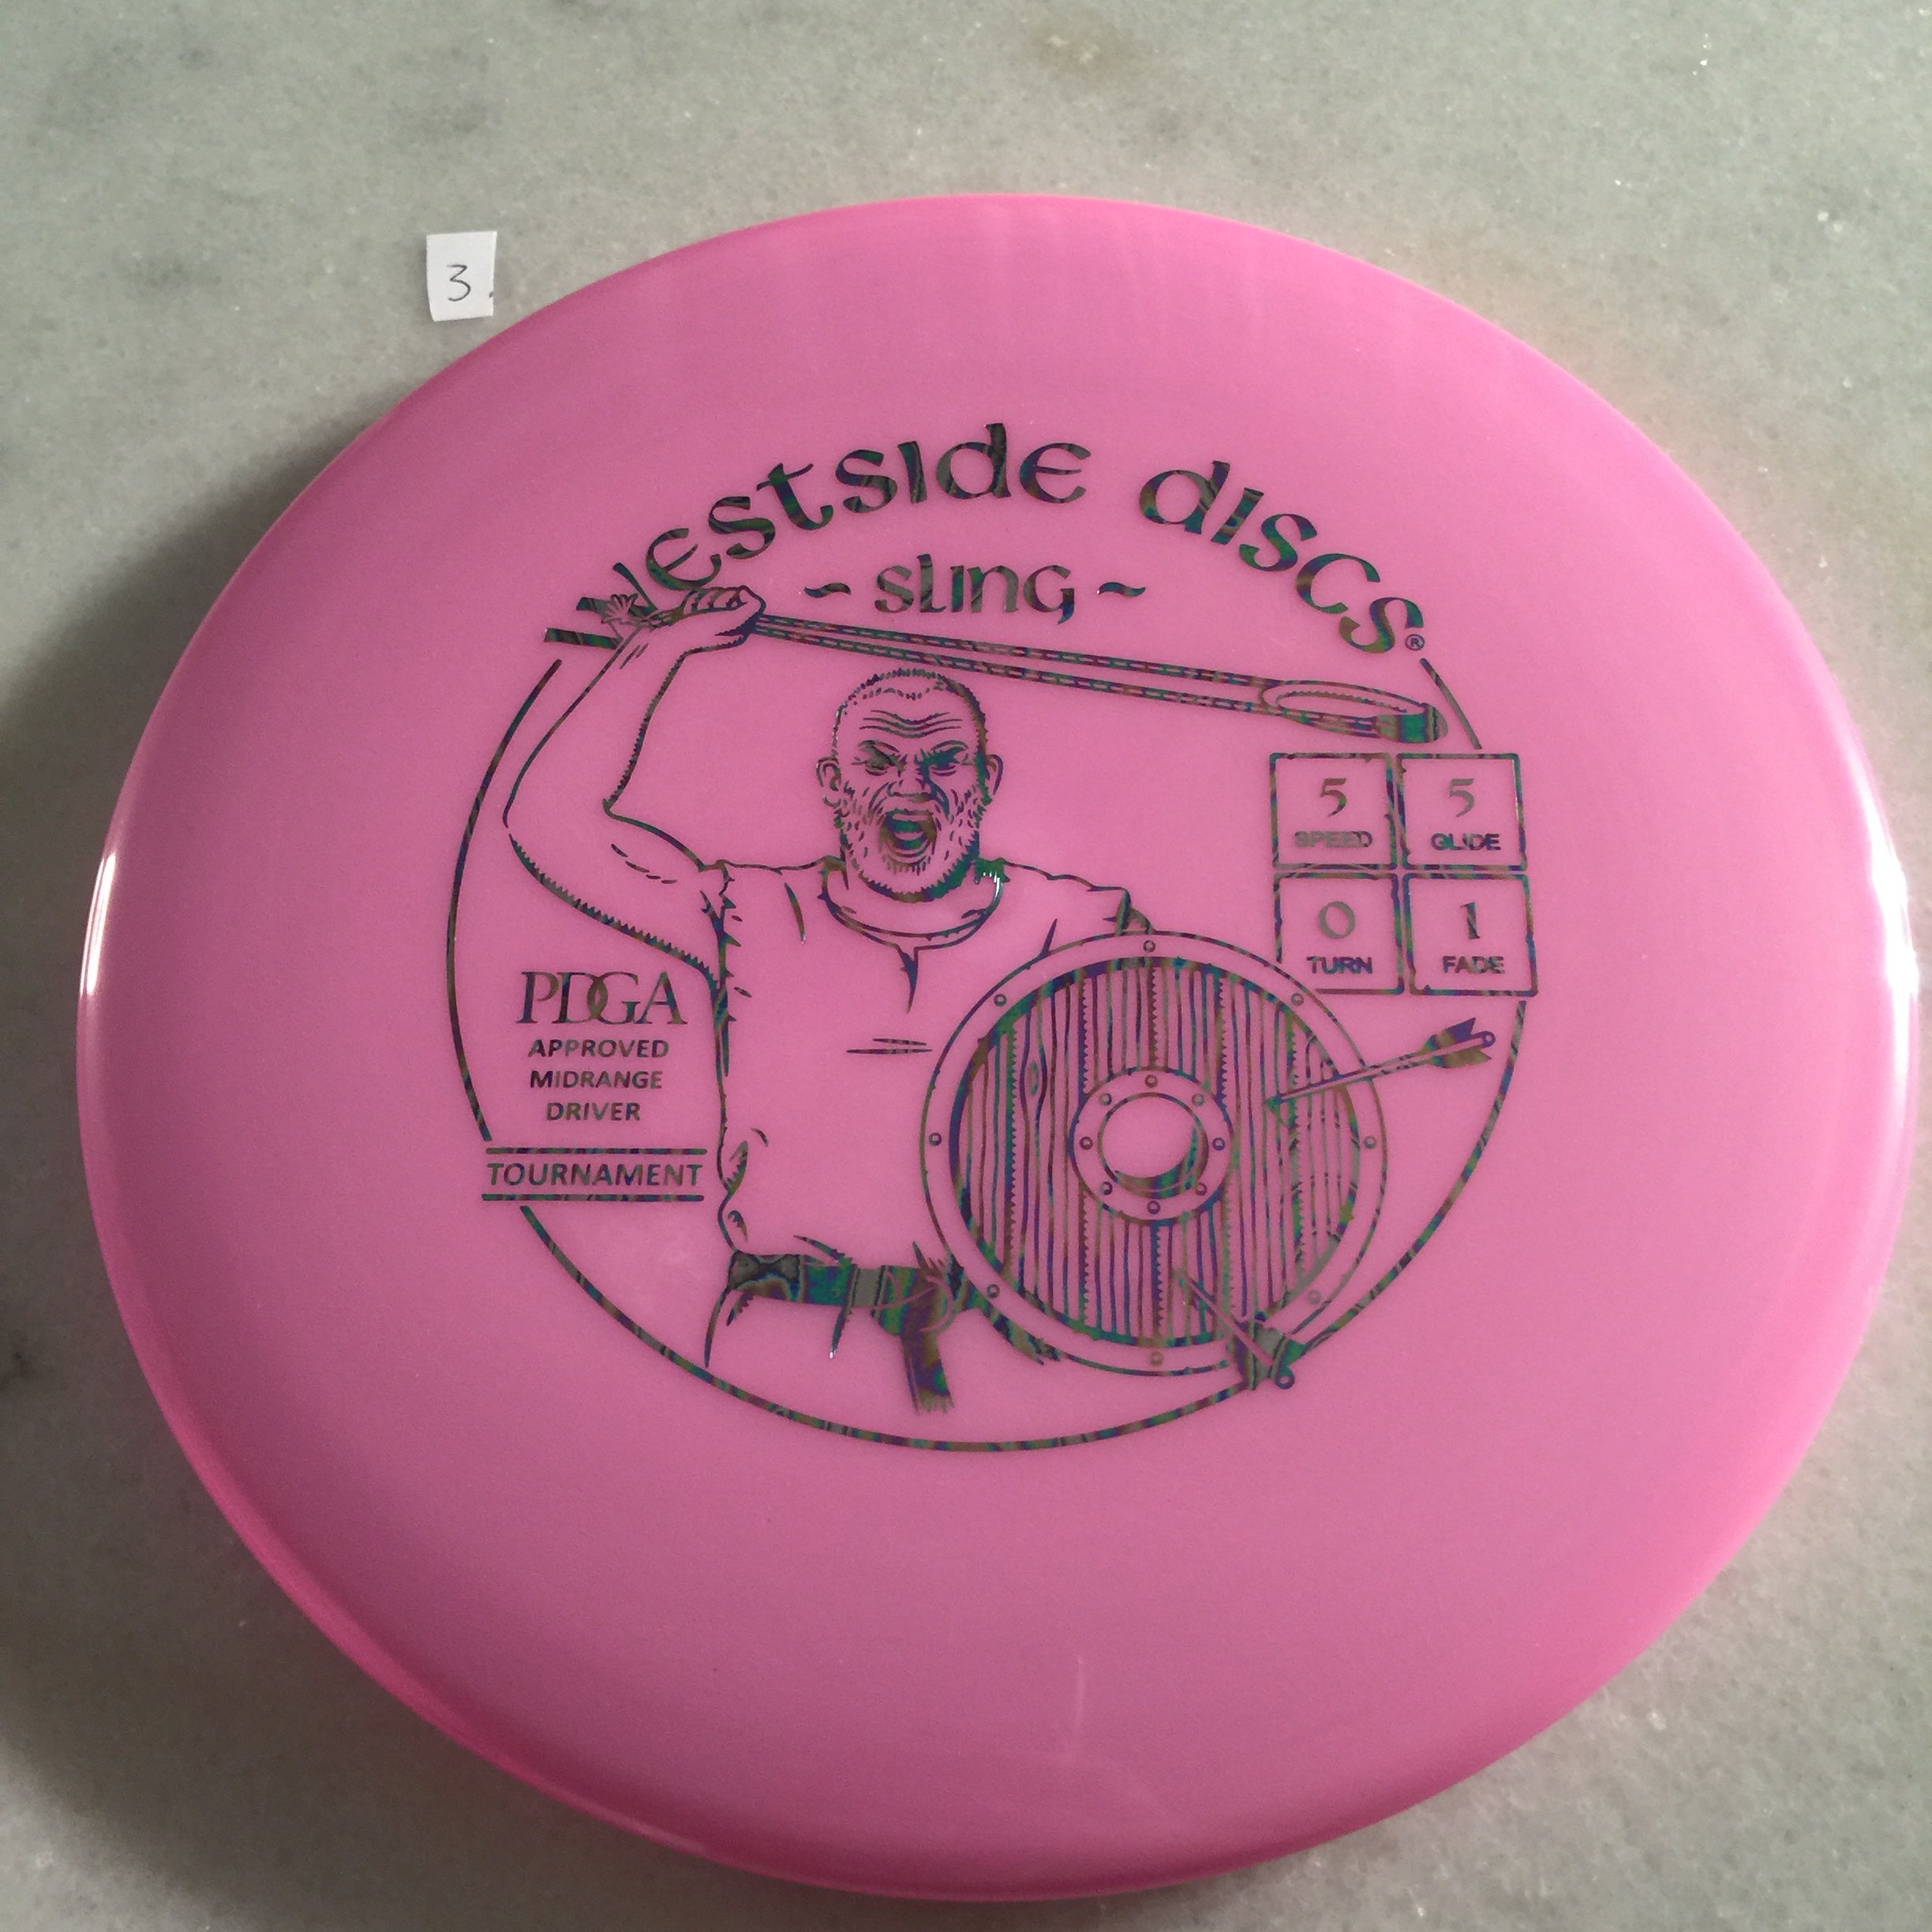 Westside Discs Tournament Sling Pink 3